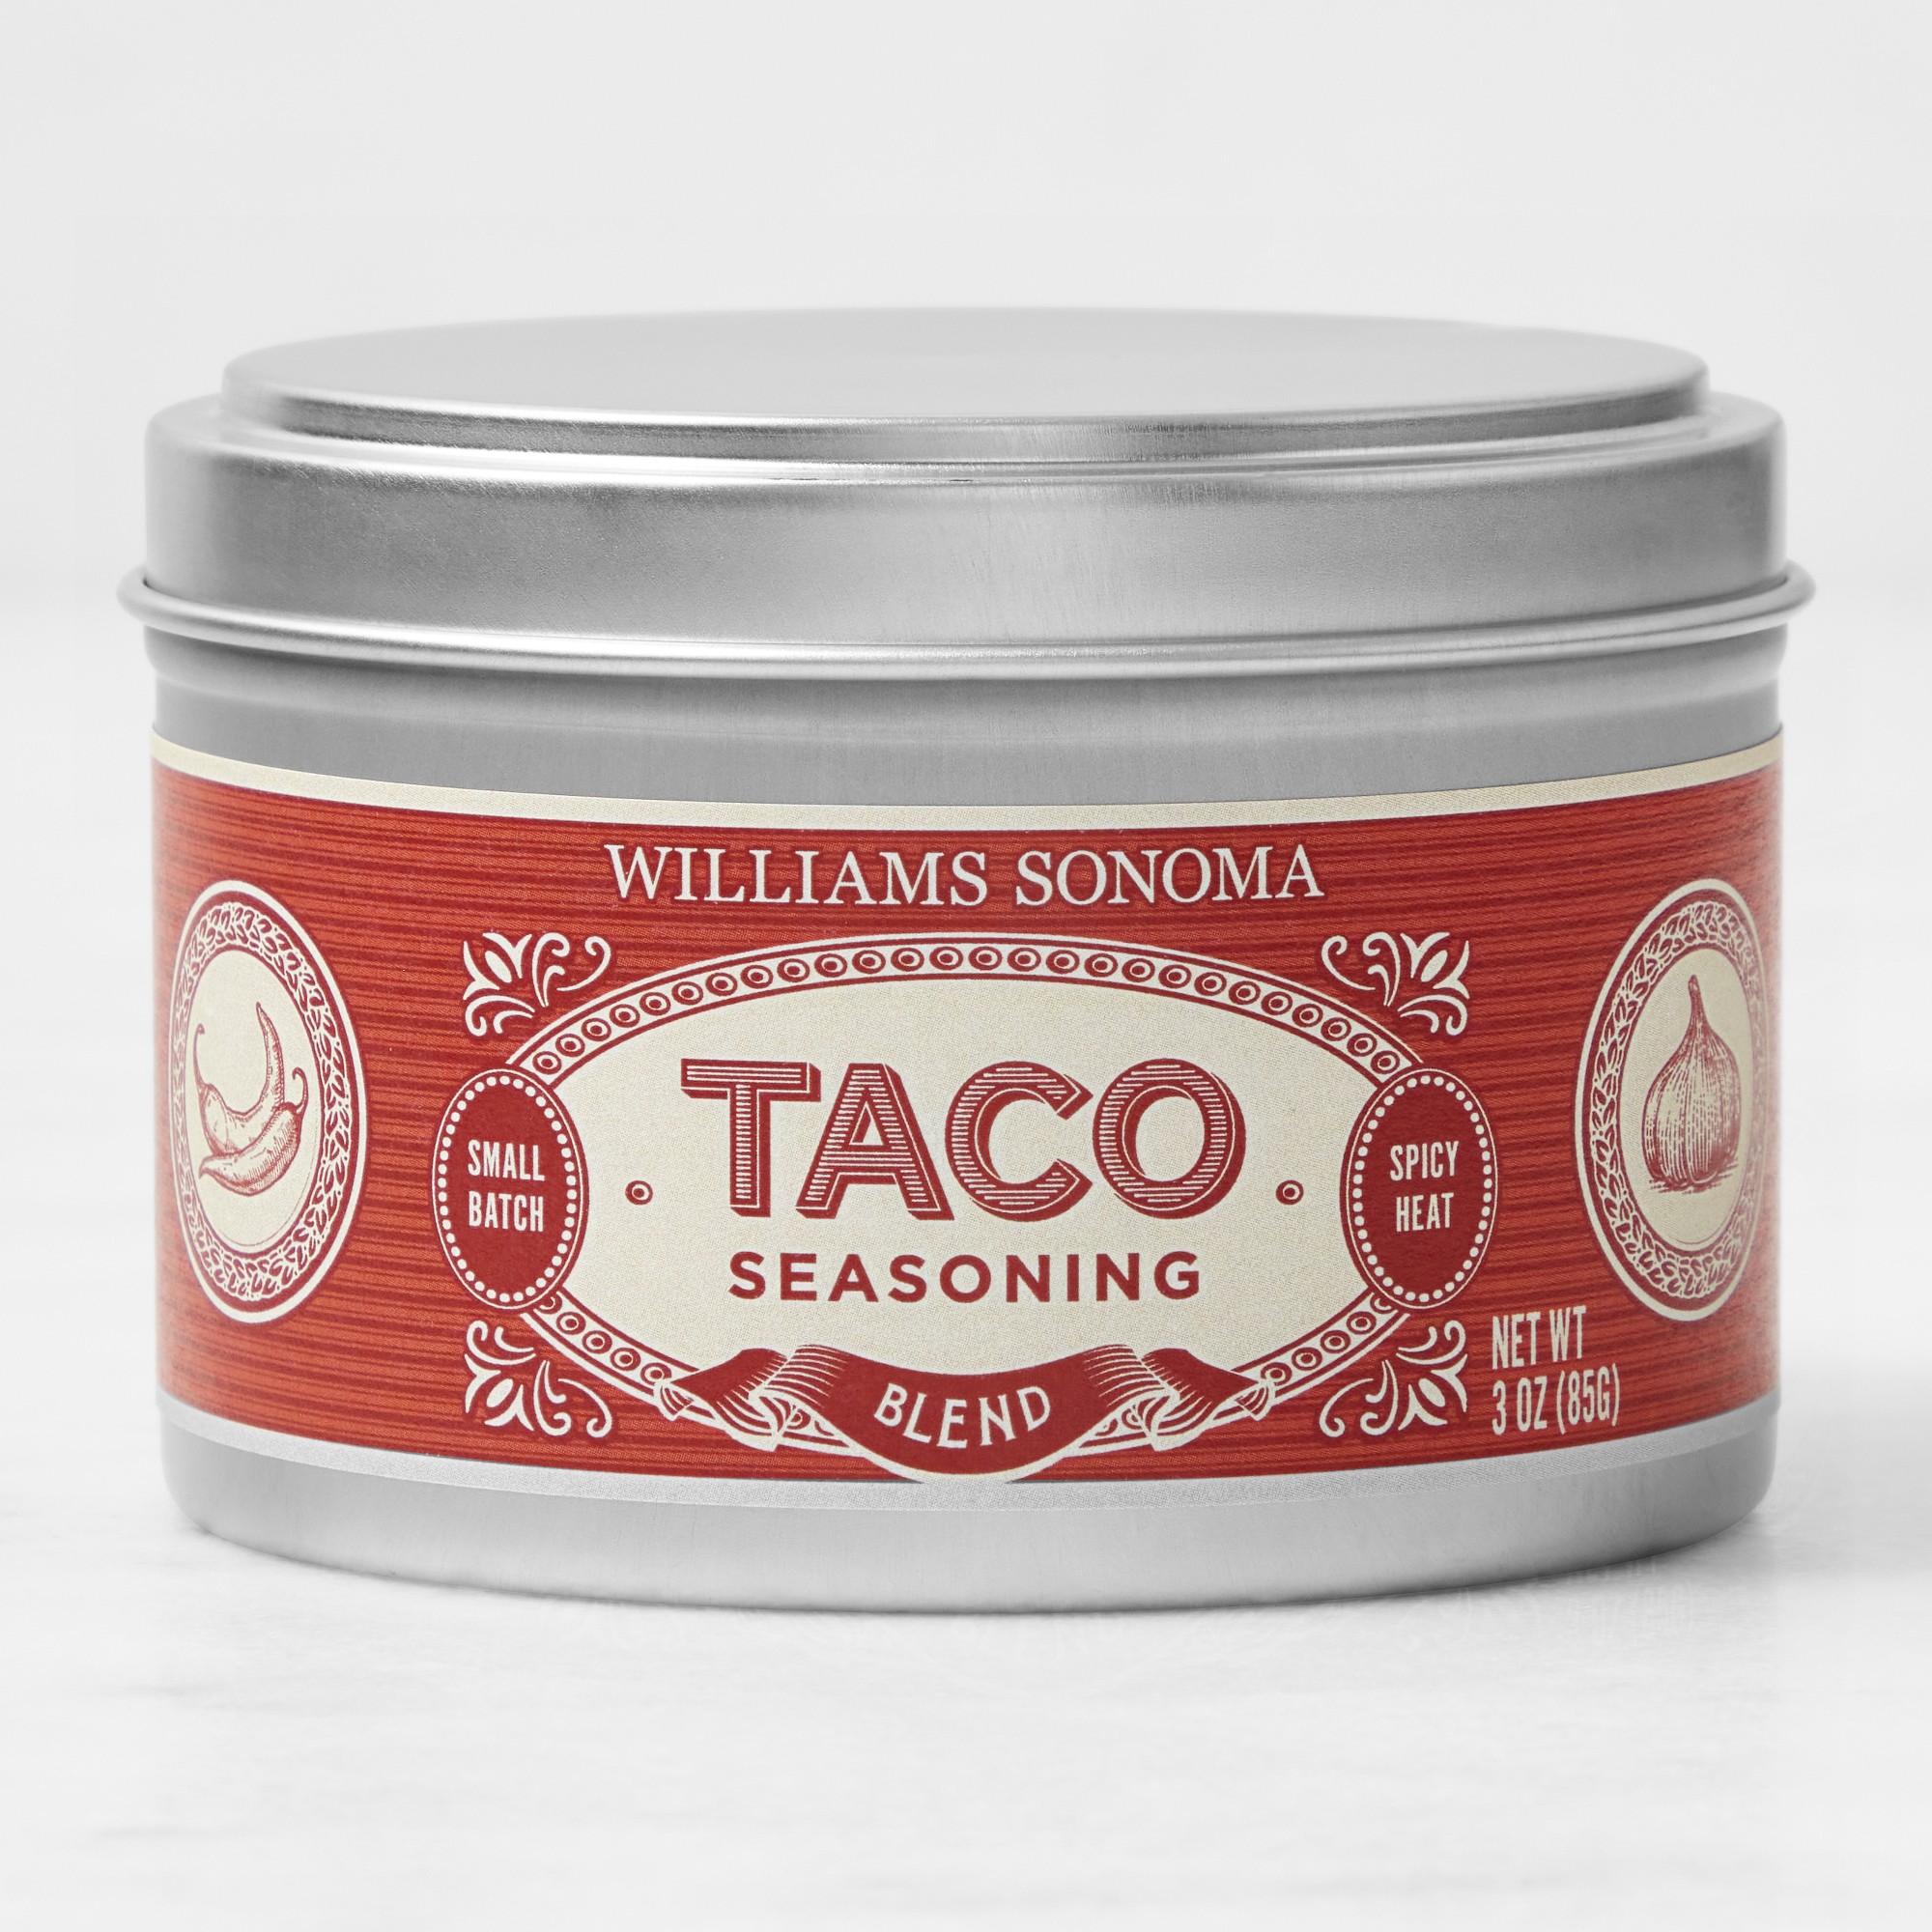 Williams Sonoma Rub, Taco Seasoning Blend